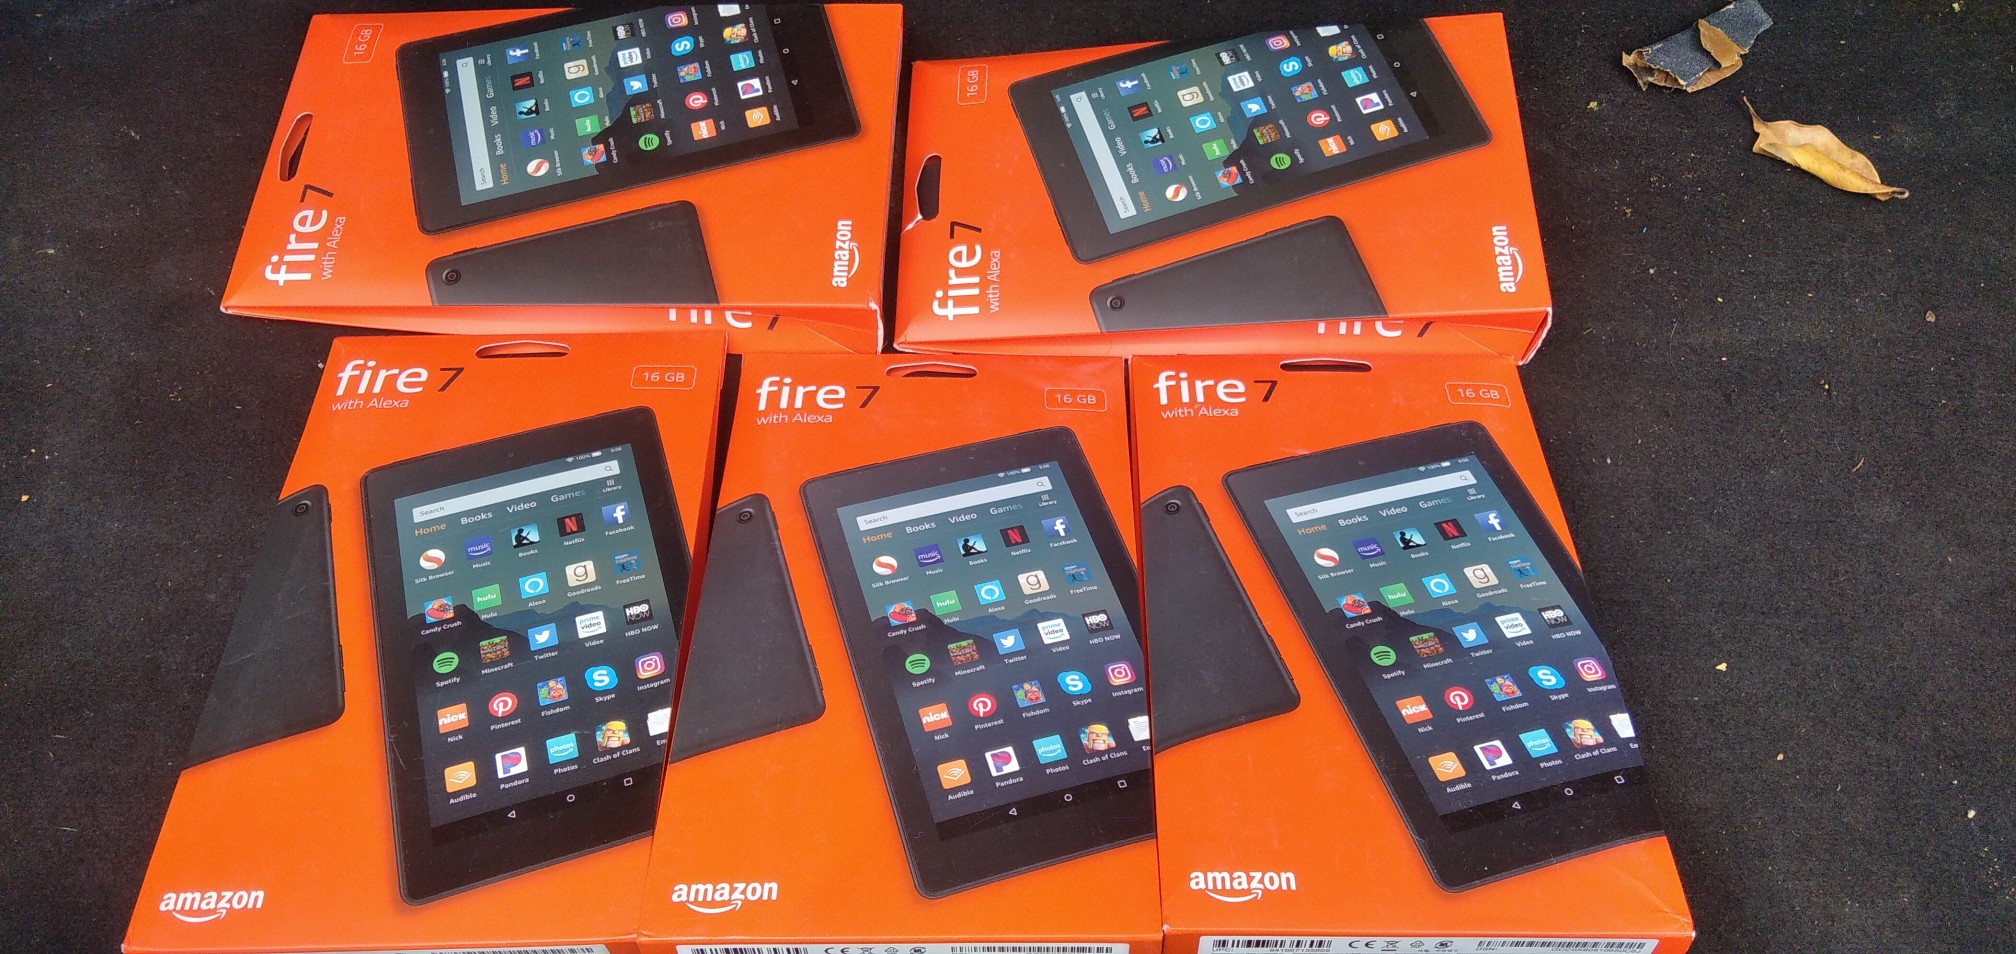 celulares y tabletas - Tablet amazon fire 7 16gb nueva